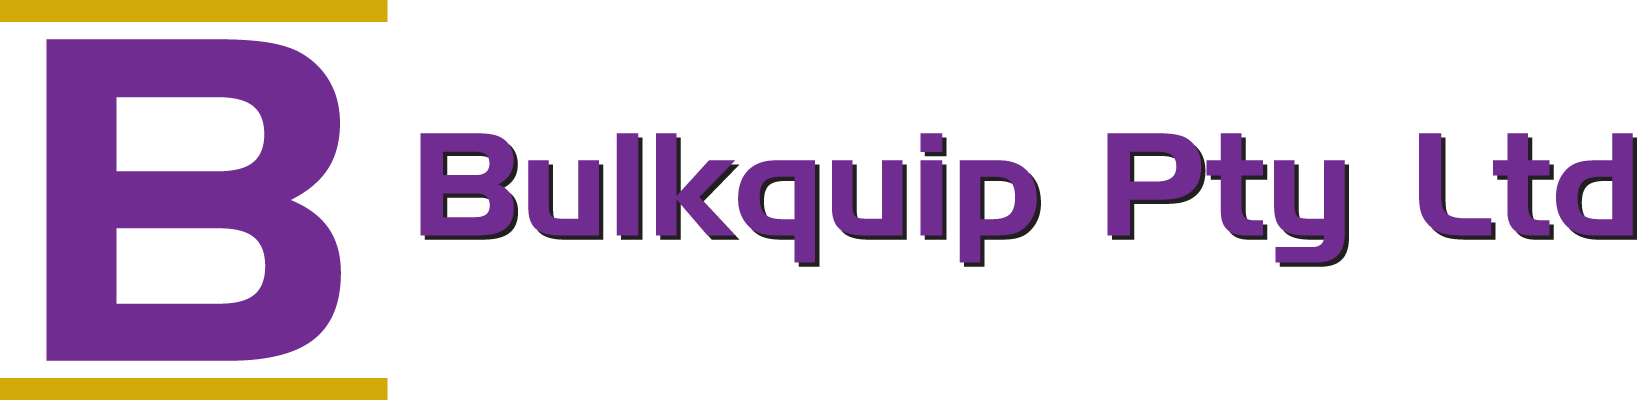 Bulkquip Logo